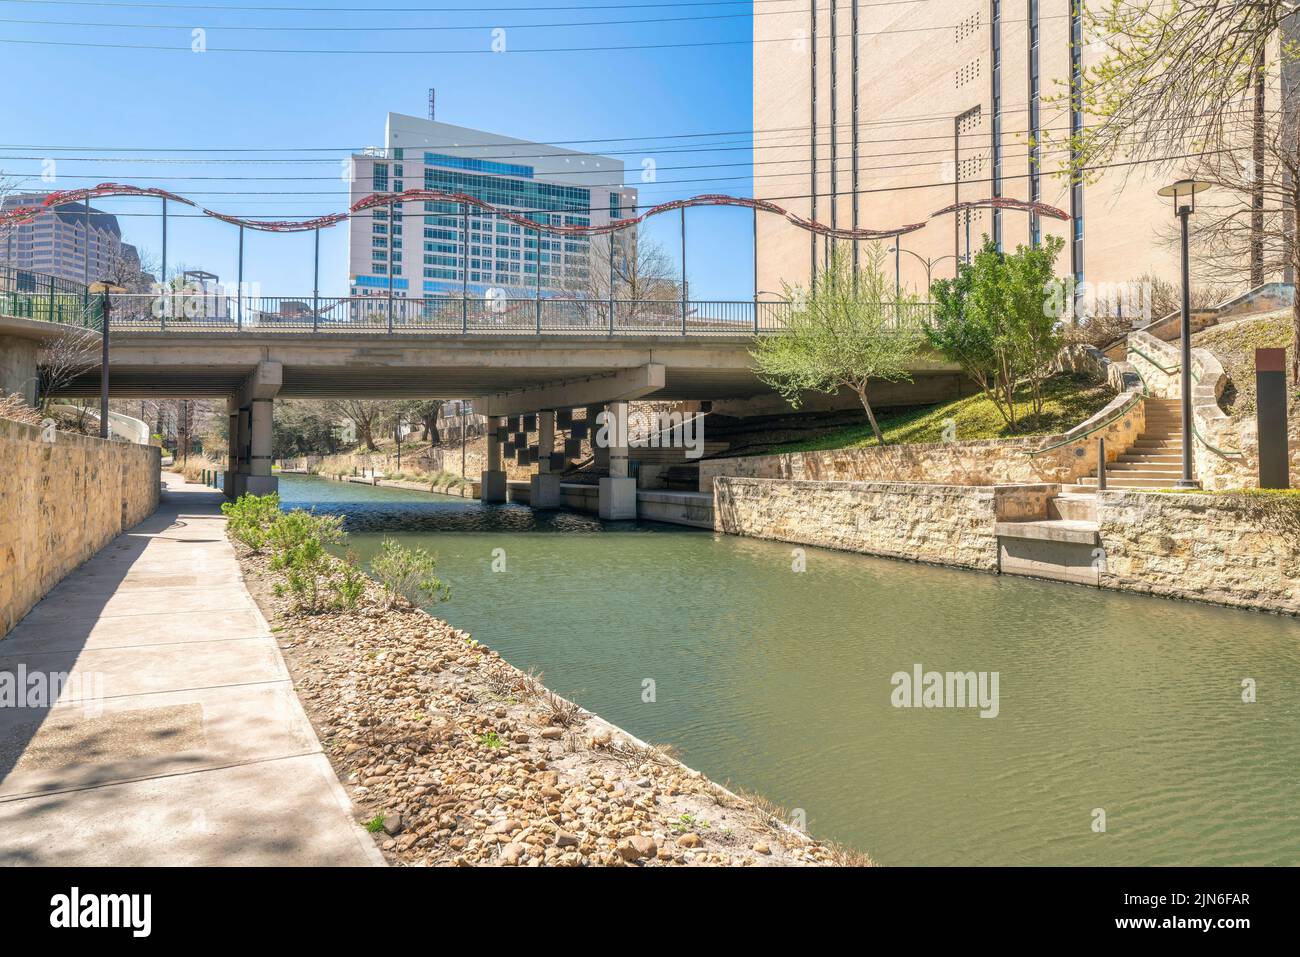 Gehweg neben dem Fluss in der Nähe der Bidge und Gebäude in San Antonio, Texas. Betonweg mit Laternenpfosten und Blick auf eine Treppe rechts n Stockfoto